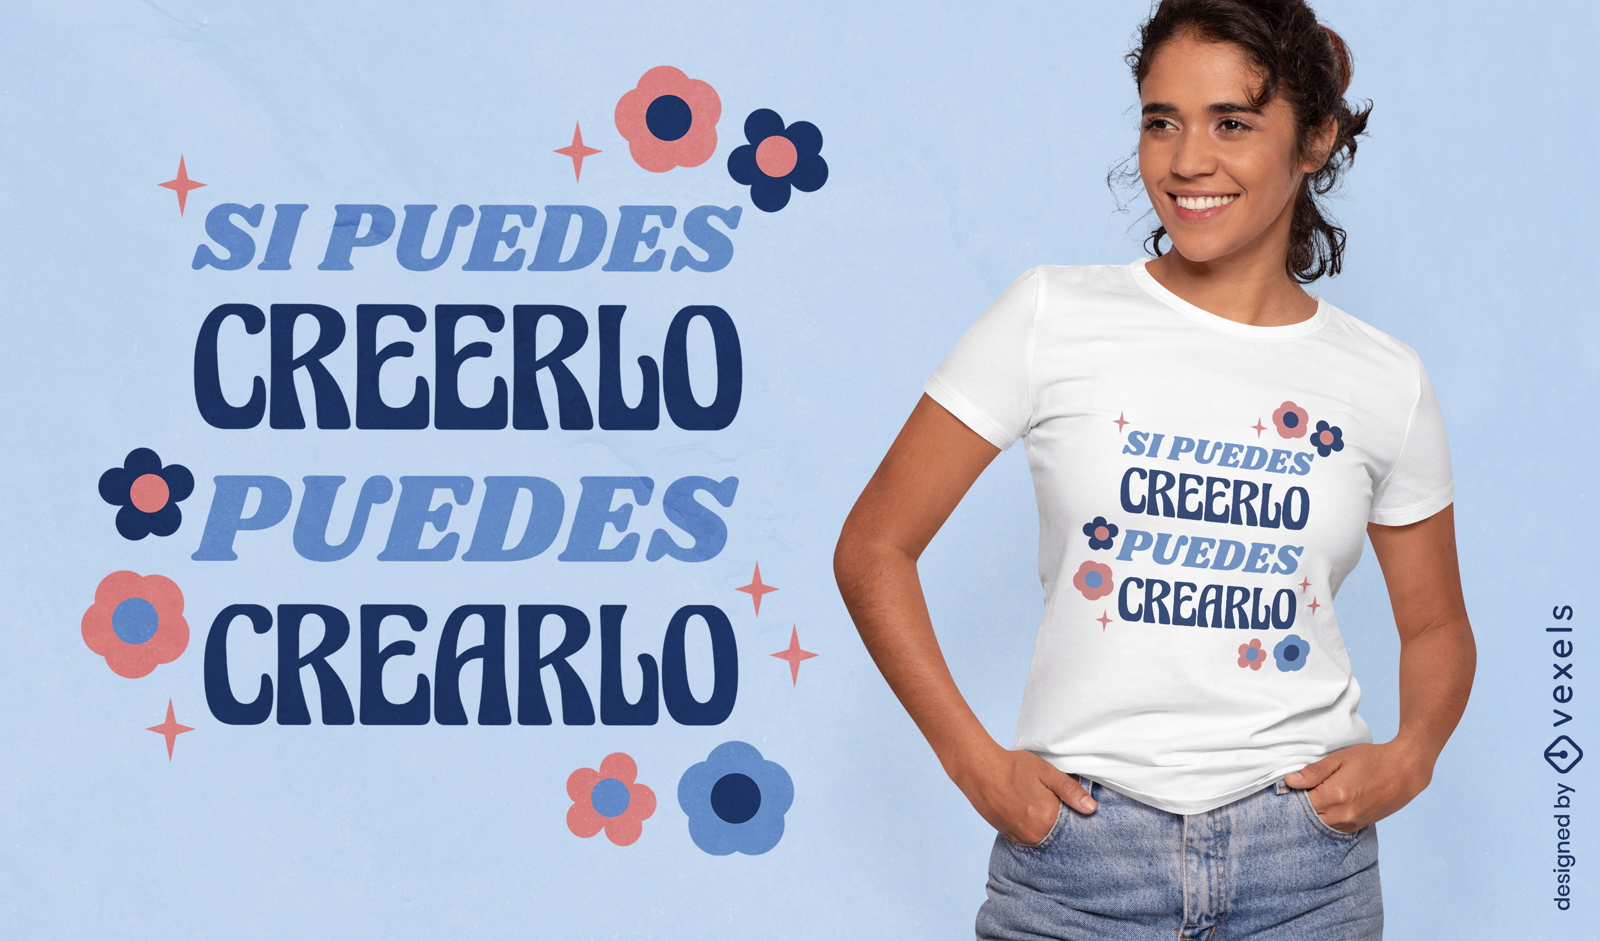 Citação motivacional em design de camiseta espanhola